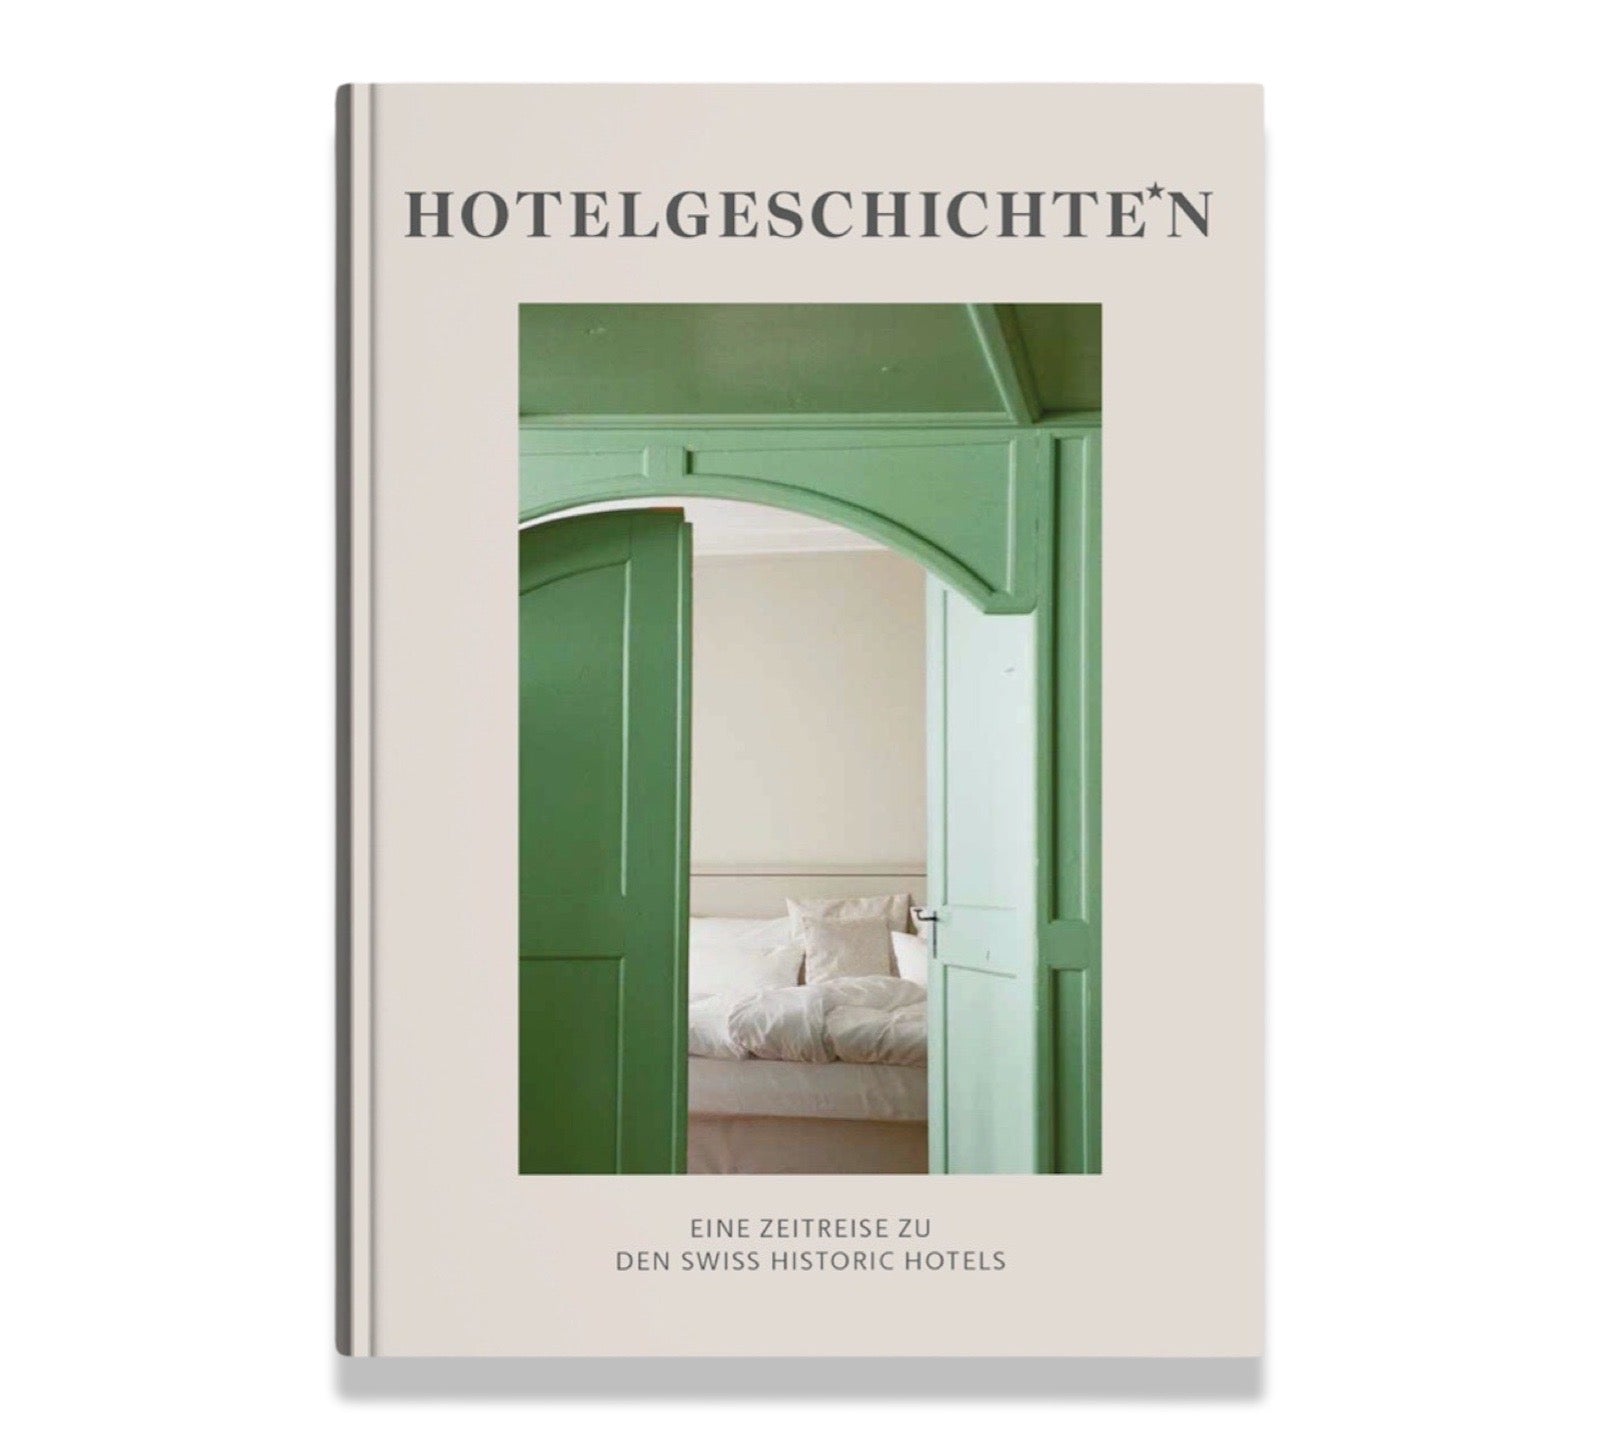 Hotelgeschichten - das Buch von Transhelvetica und den Swiss Historic Hotels präsentiert auf einer Reise durch die Schweiz sämtliche Hotels, angereichert mit Anekdoten.